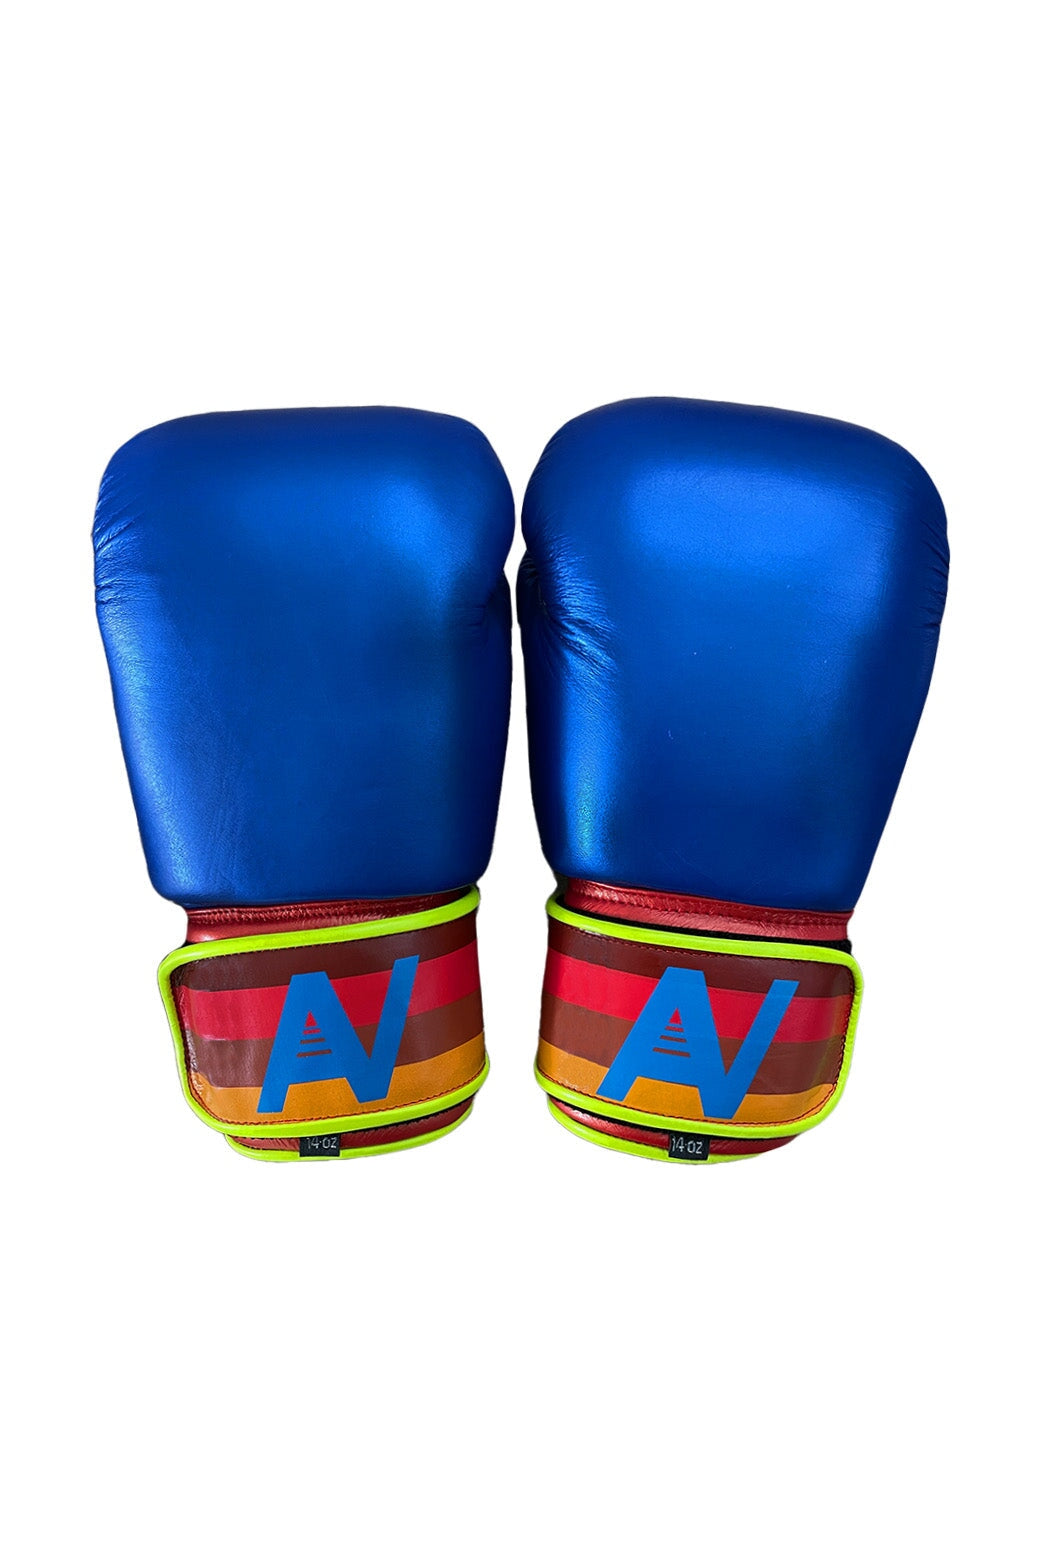 BOXING GLOVES - BLUE // WHITE Boxing Gloves Aviator Nation 